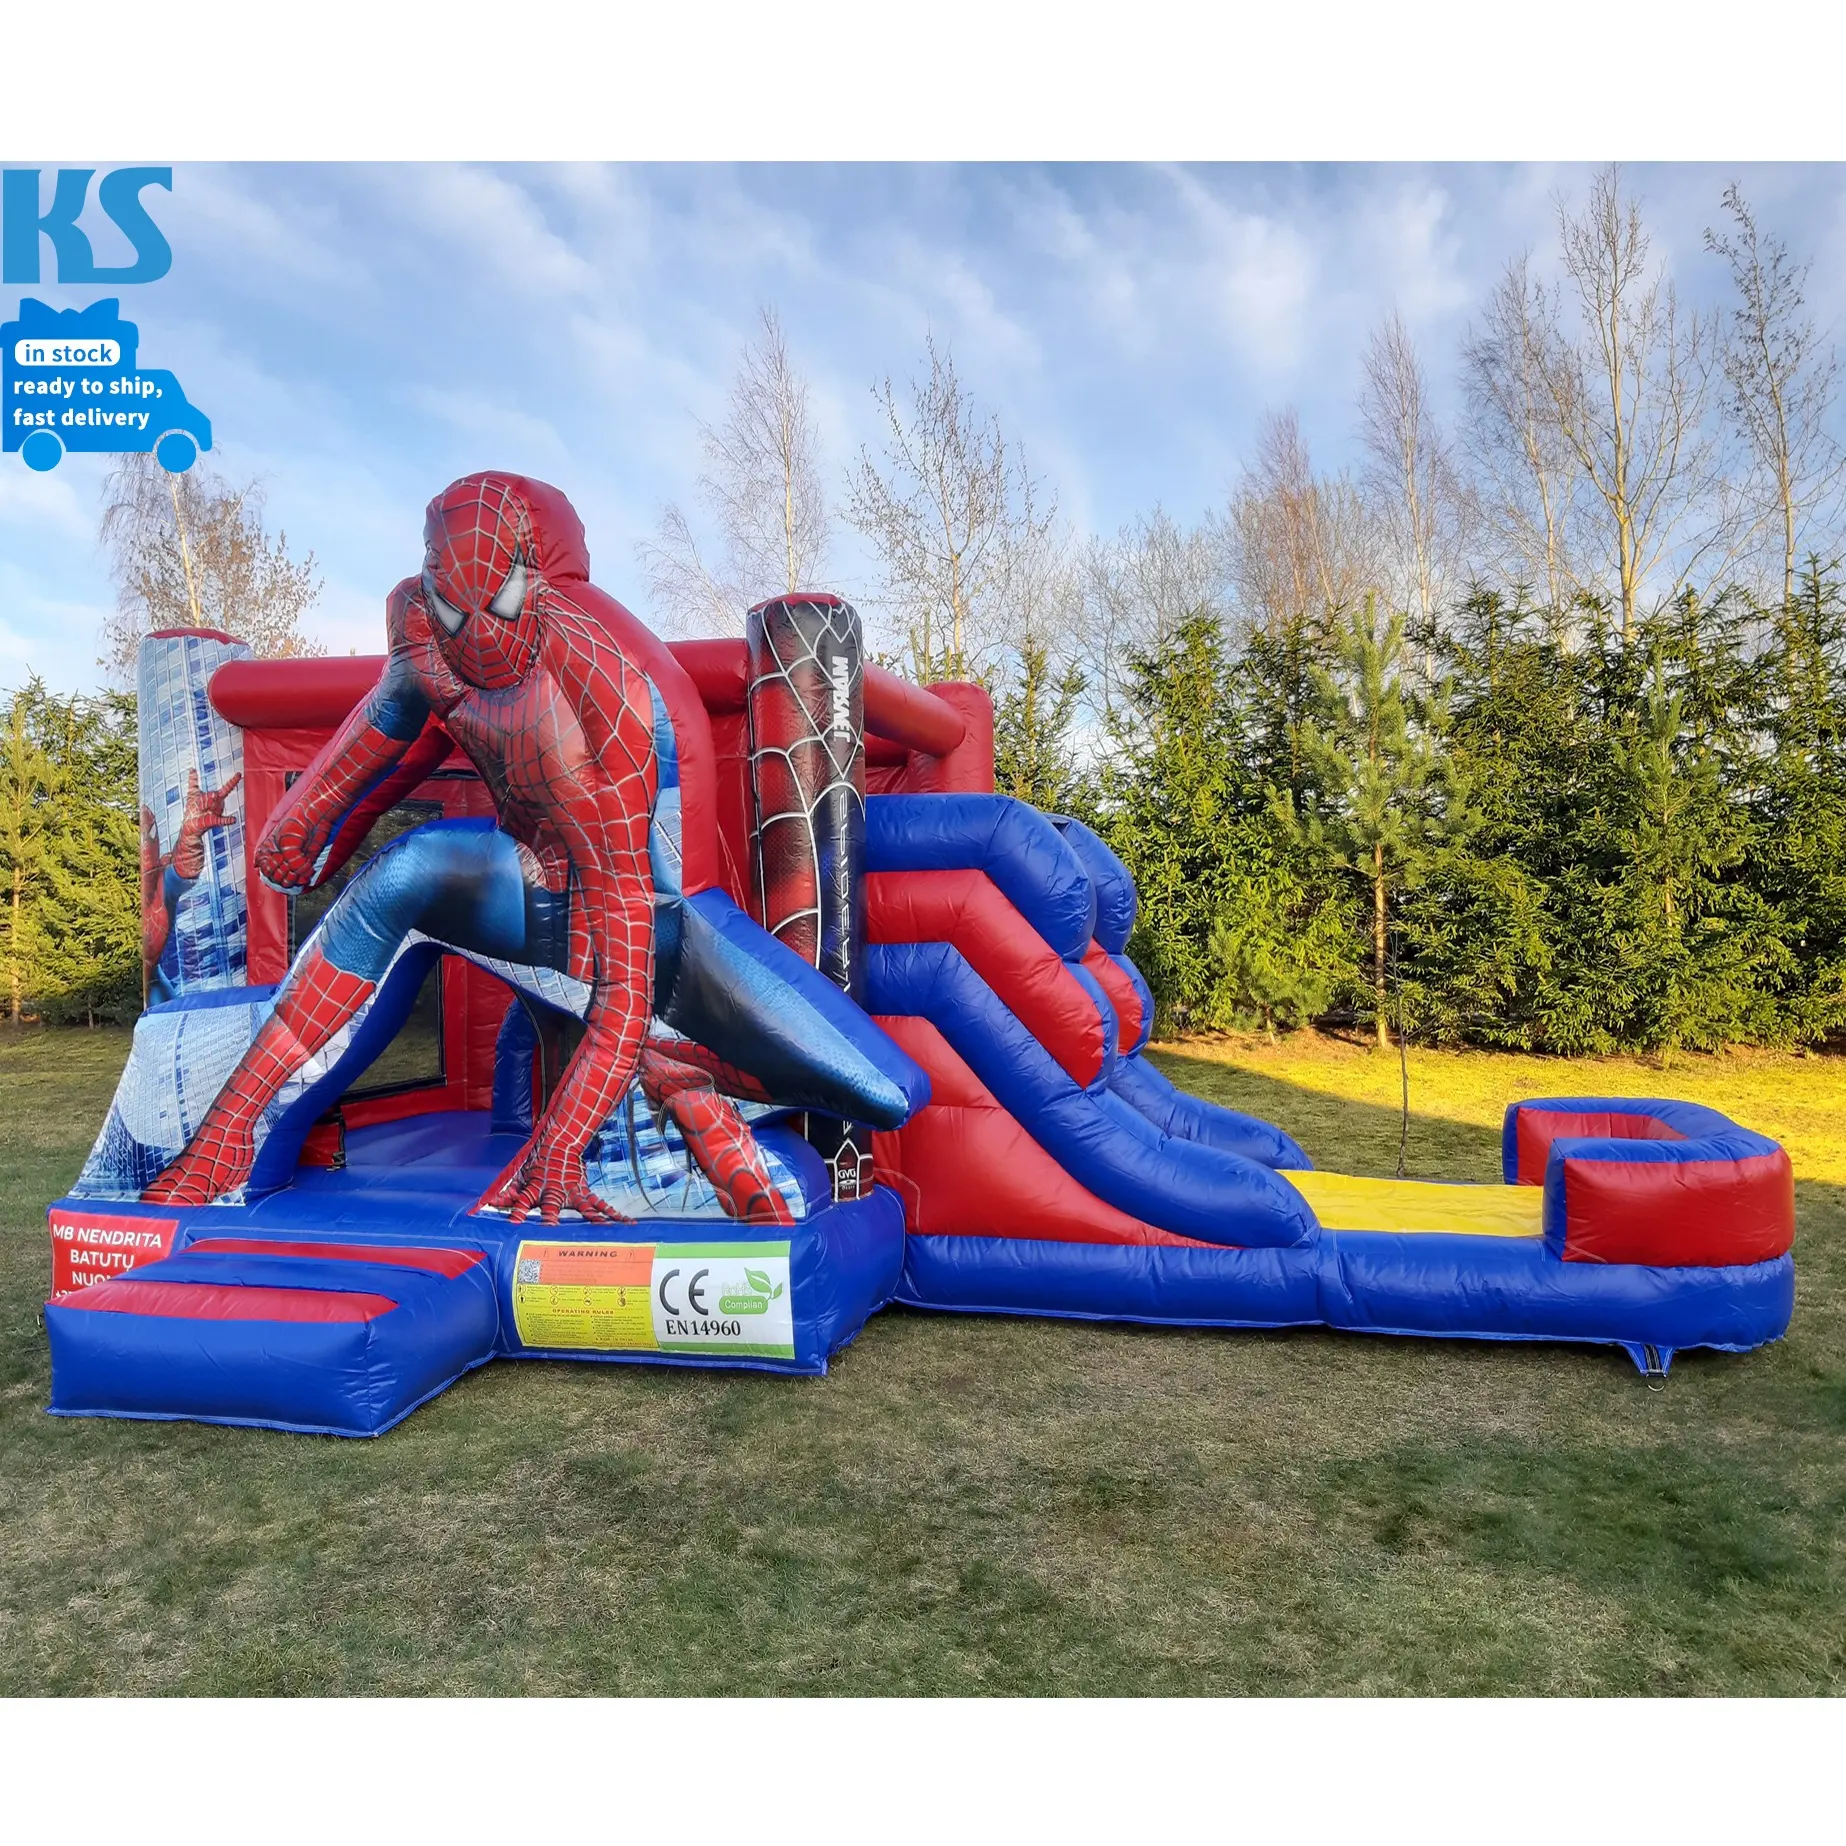 Coole kommerzielle PVC Kinder aufblasbare Spider Man Bounce House springende Hüpfburg mit Rutsche für Party verleih Event